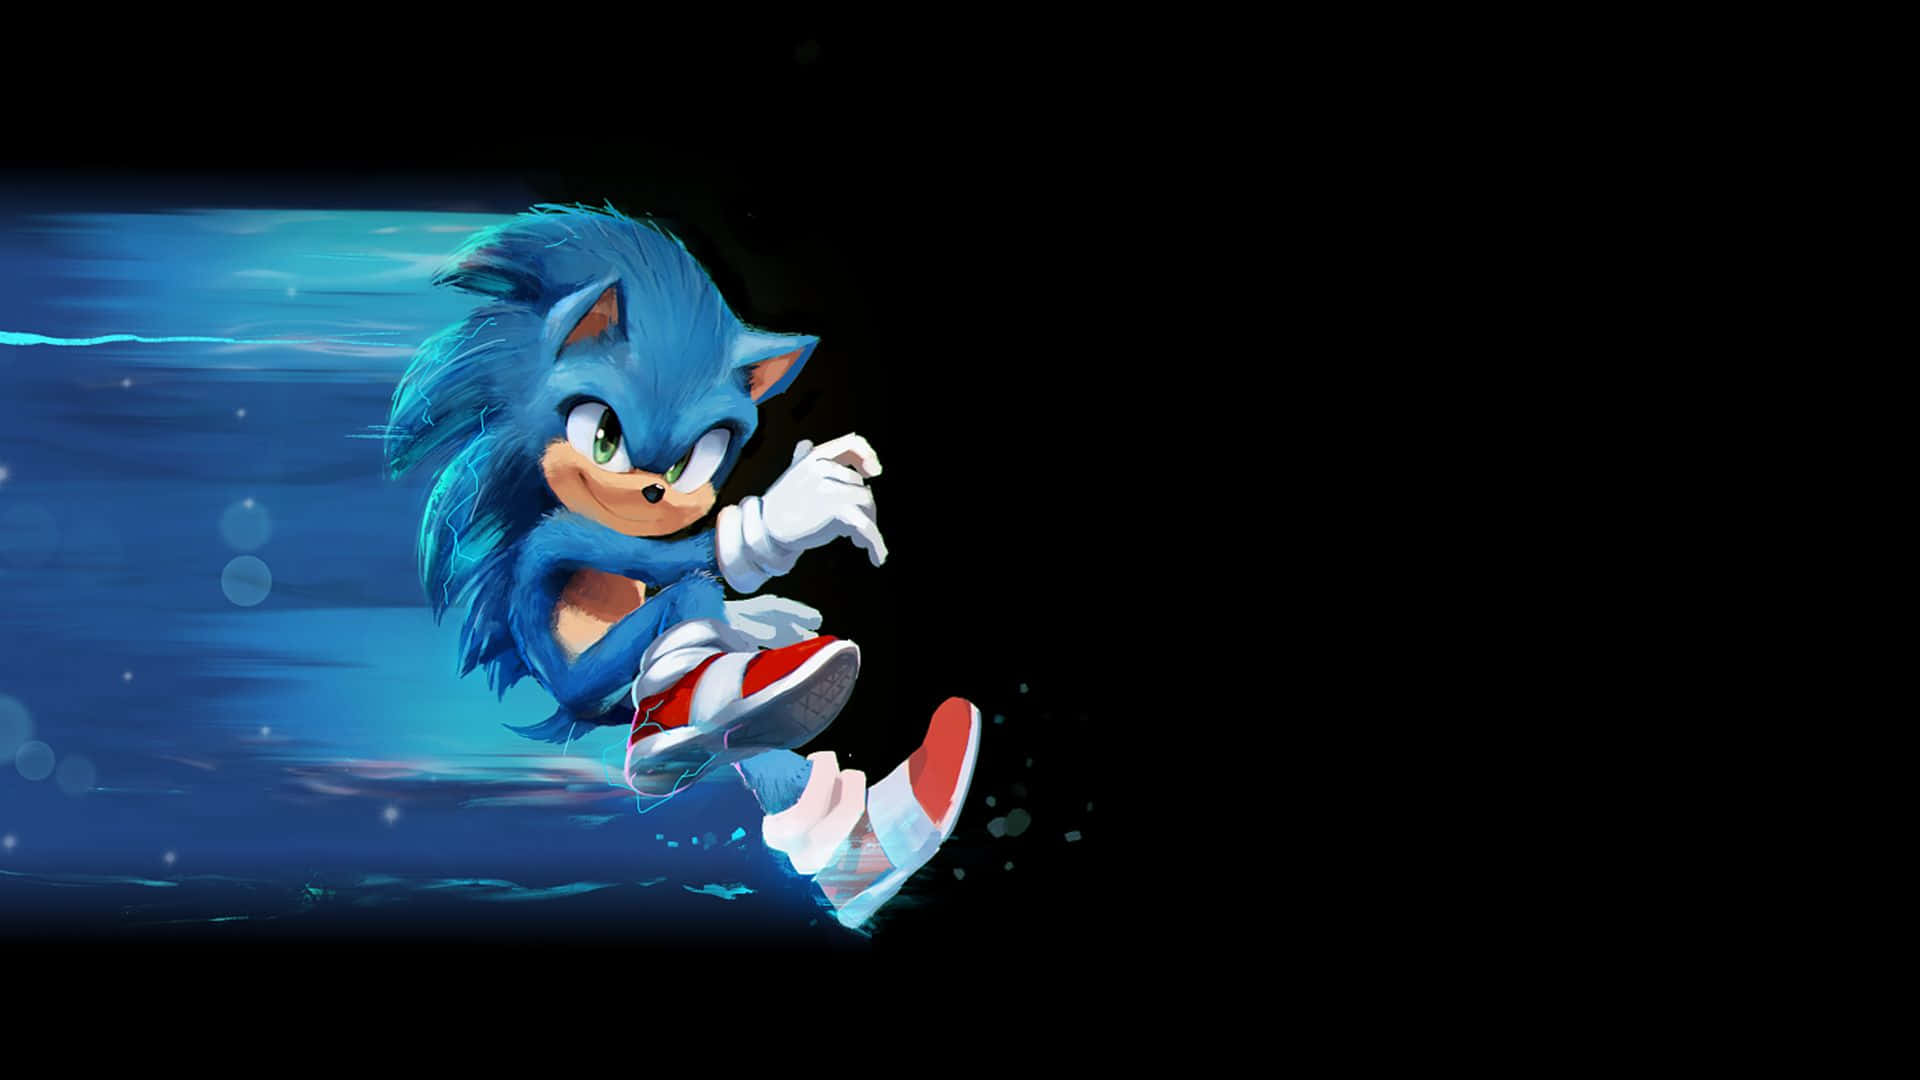 Sonicthe Hedgehog È Pronto A Partire Per Un'avventura Mozzafiato! Sfondo